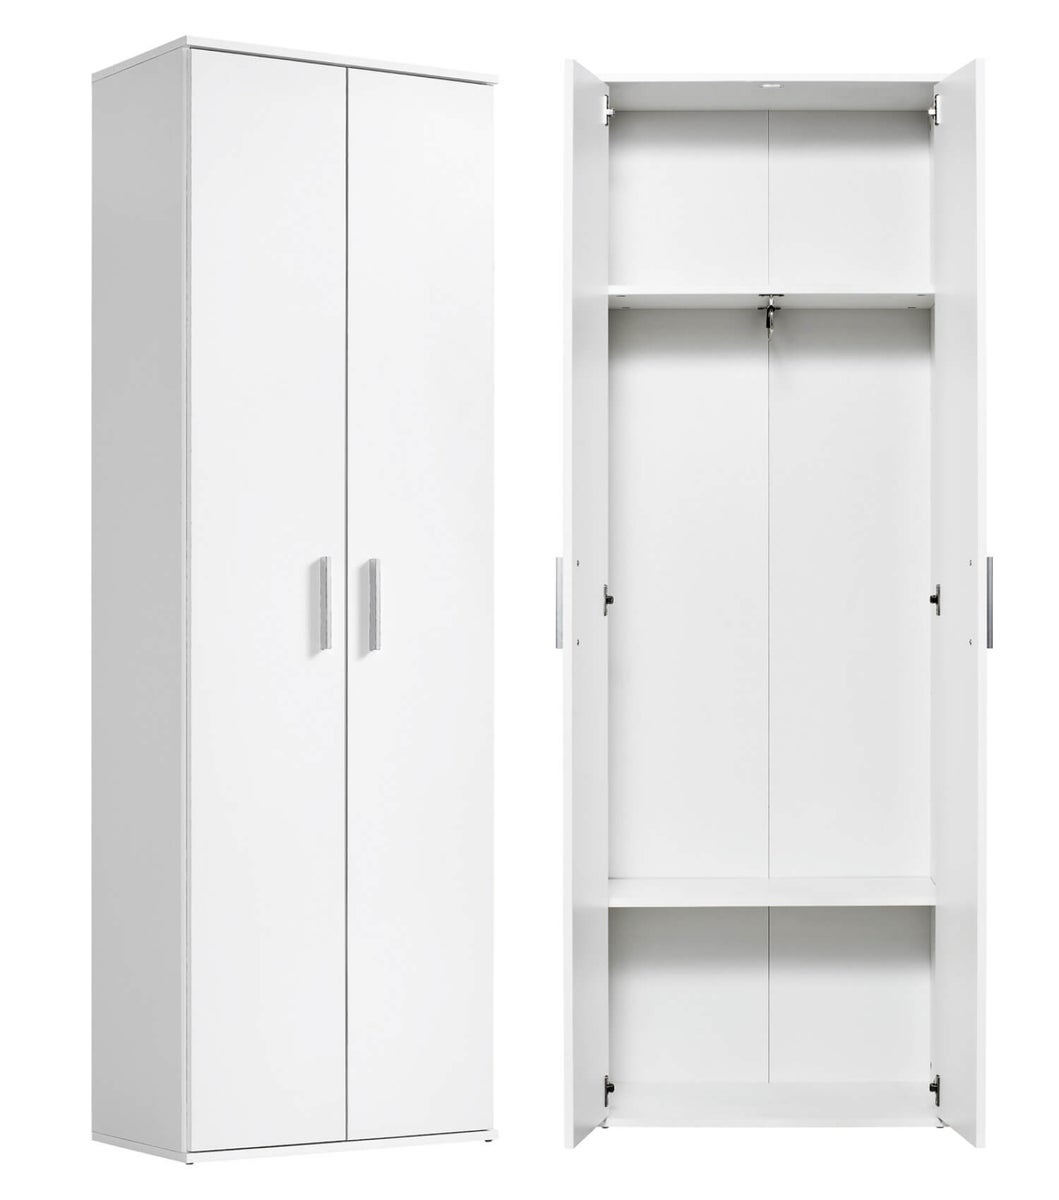 Garderobenschrank in Weiß aus Holz 'Der Lange', Flurschrank mit Kleiderstange, Mehrzweckschrank, Hochschrank oder Kellerschrank, Schrank in 60x180x34 (BxHxT in cm)